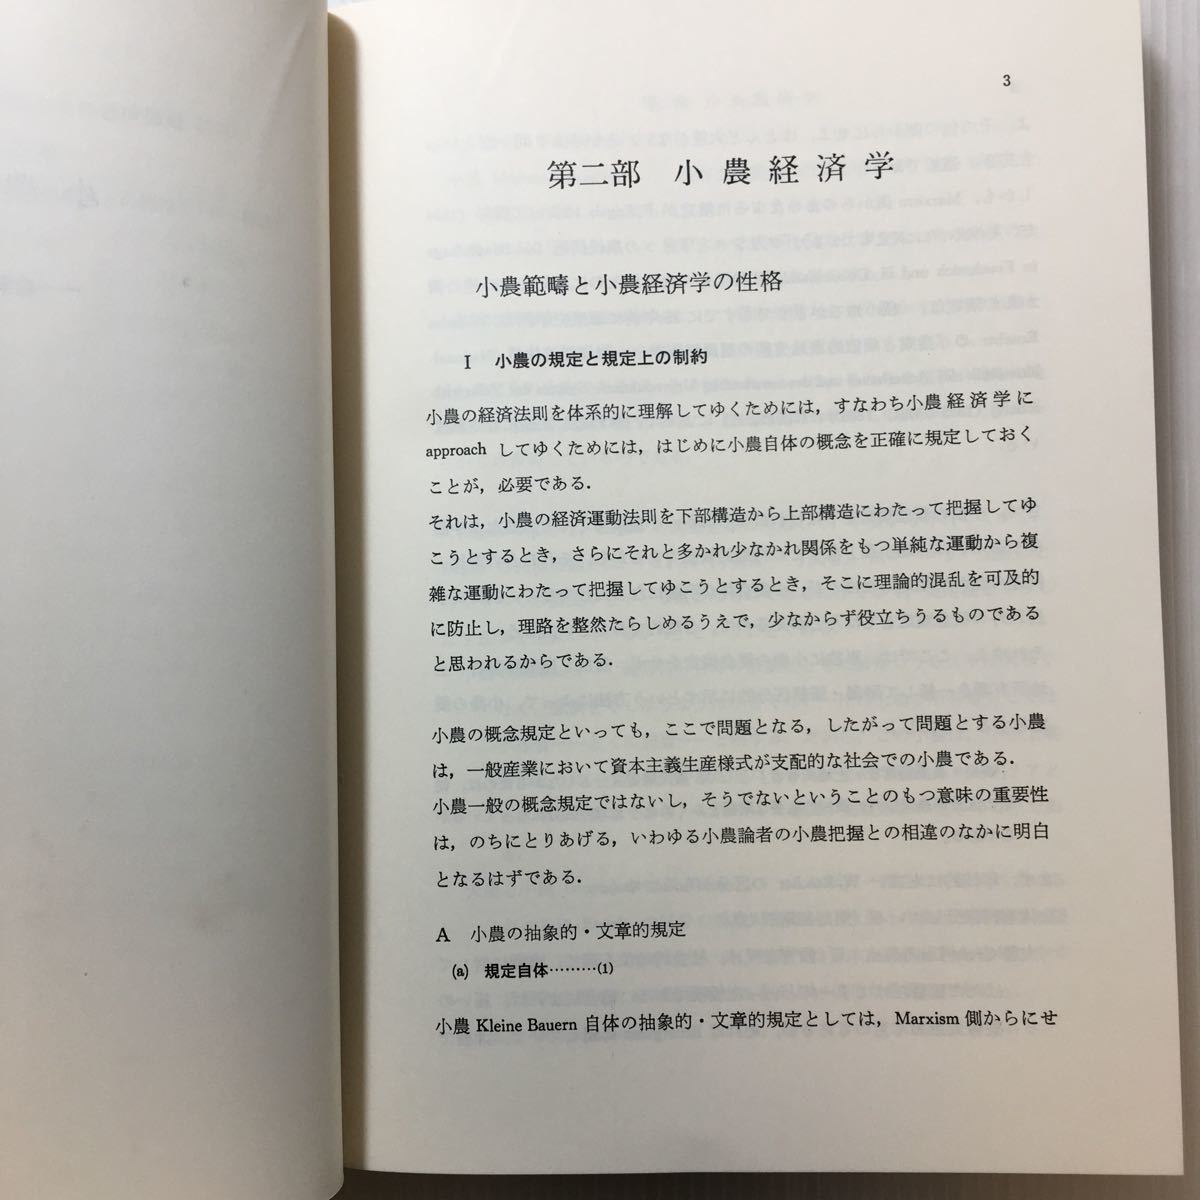 zaa-203♪小農経済学 (1970年) 古書, 1972/4/15　石渡 貞雄 (著)　亜紀書房